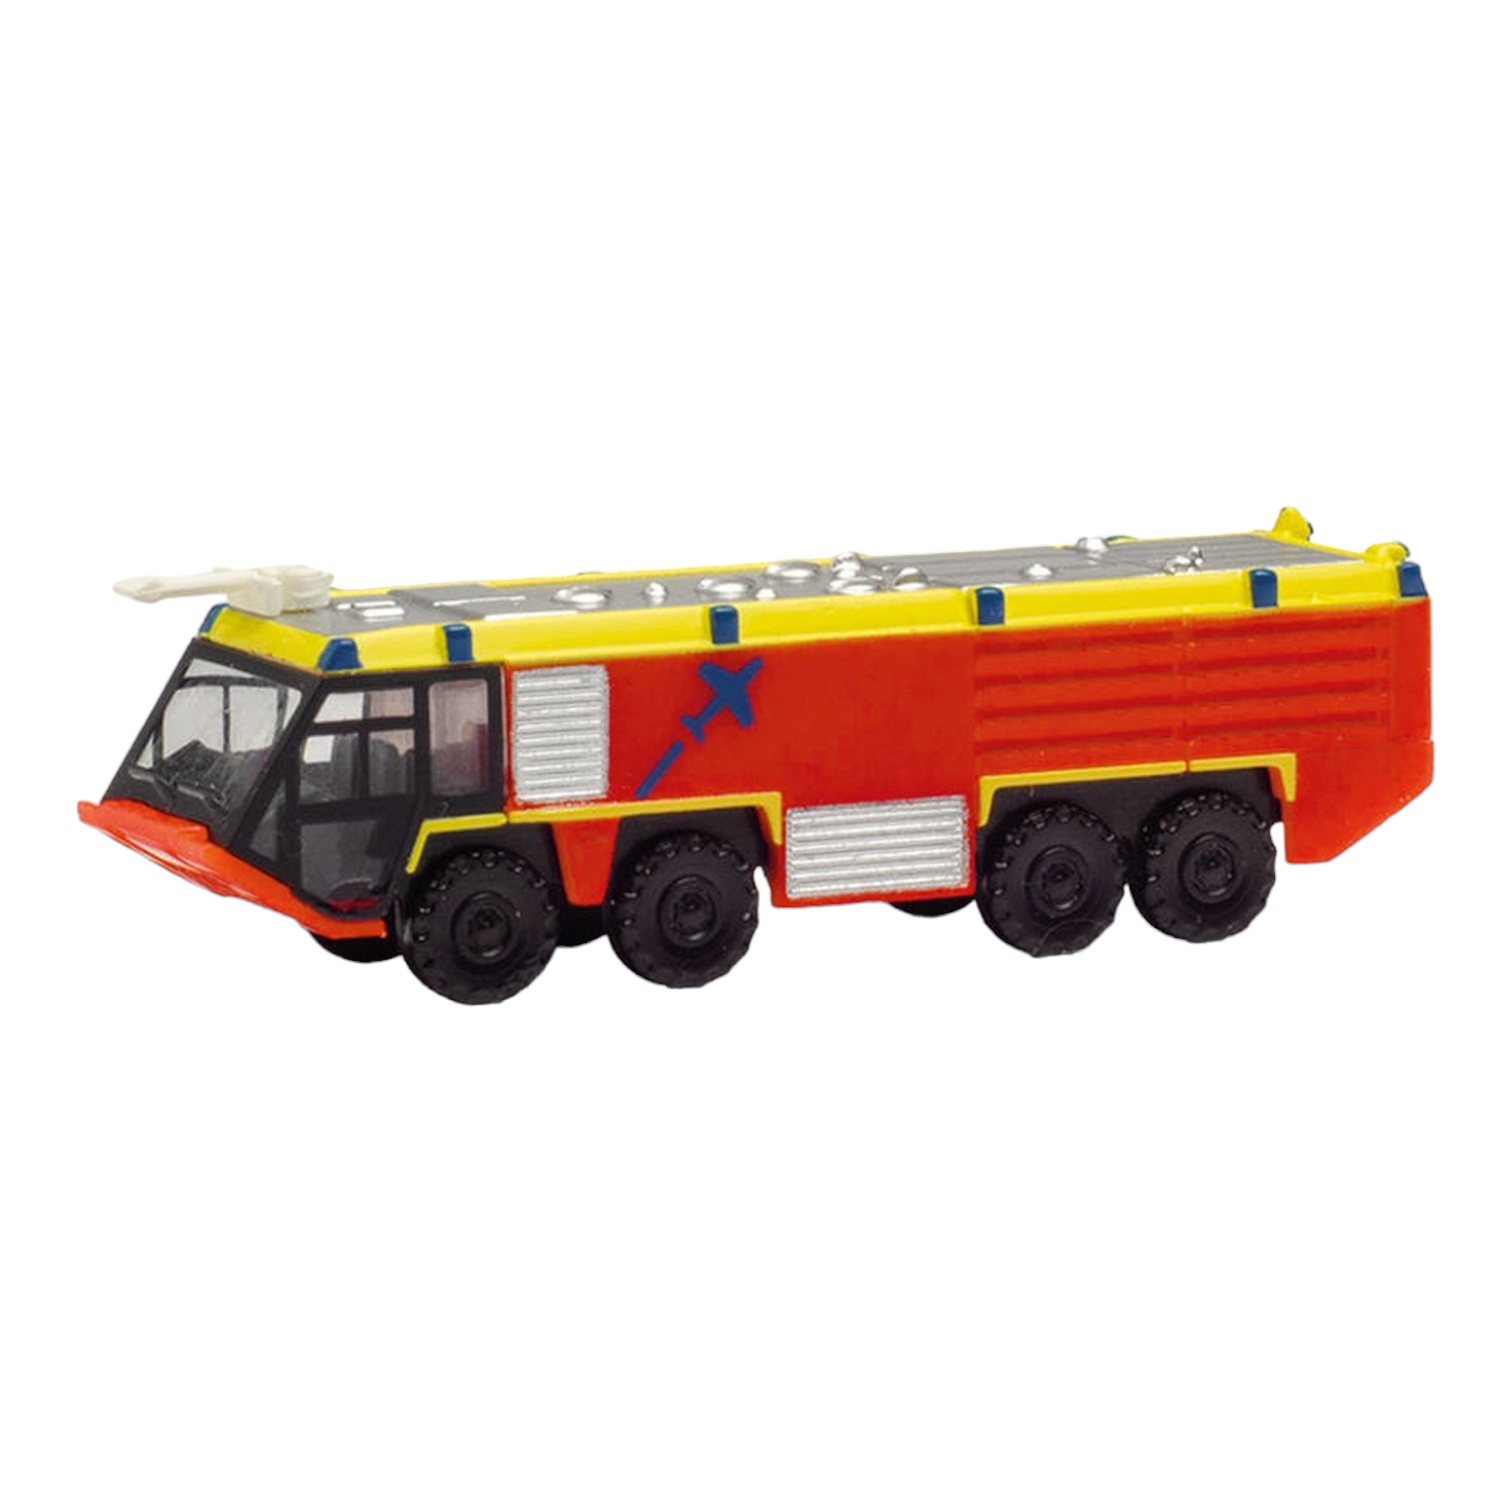 Herpa 571548 Hamburg Airport Fire Engine Modellfahrzeug 1:200 - Miniatur  Wunderland Shop